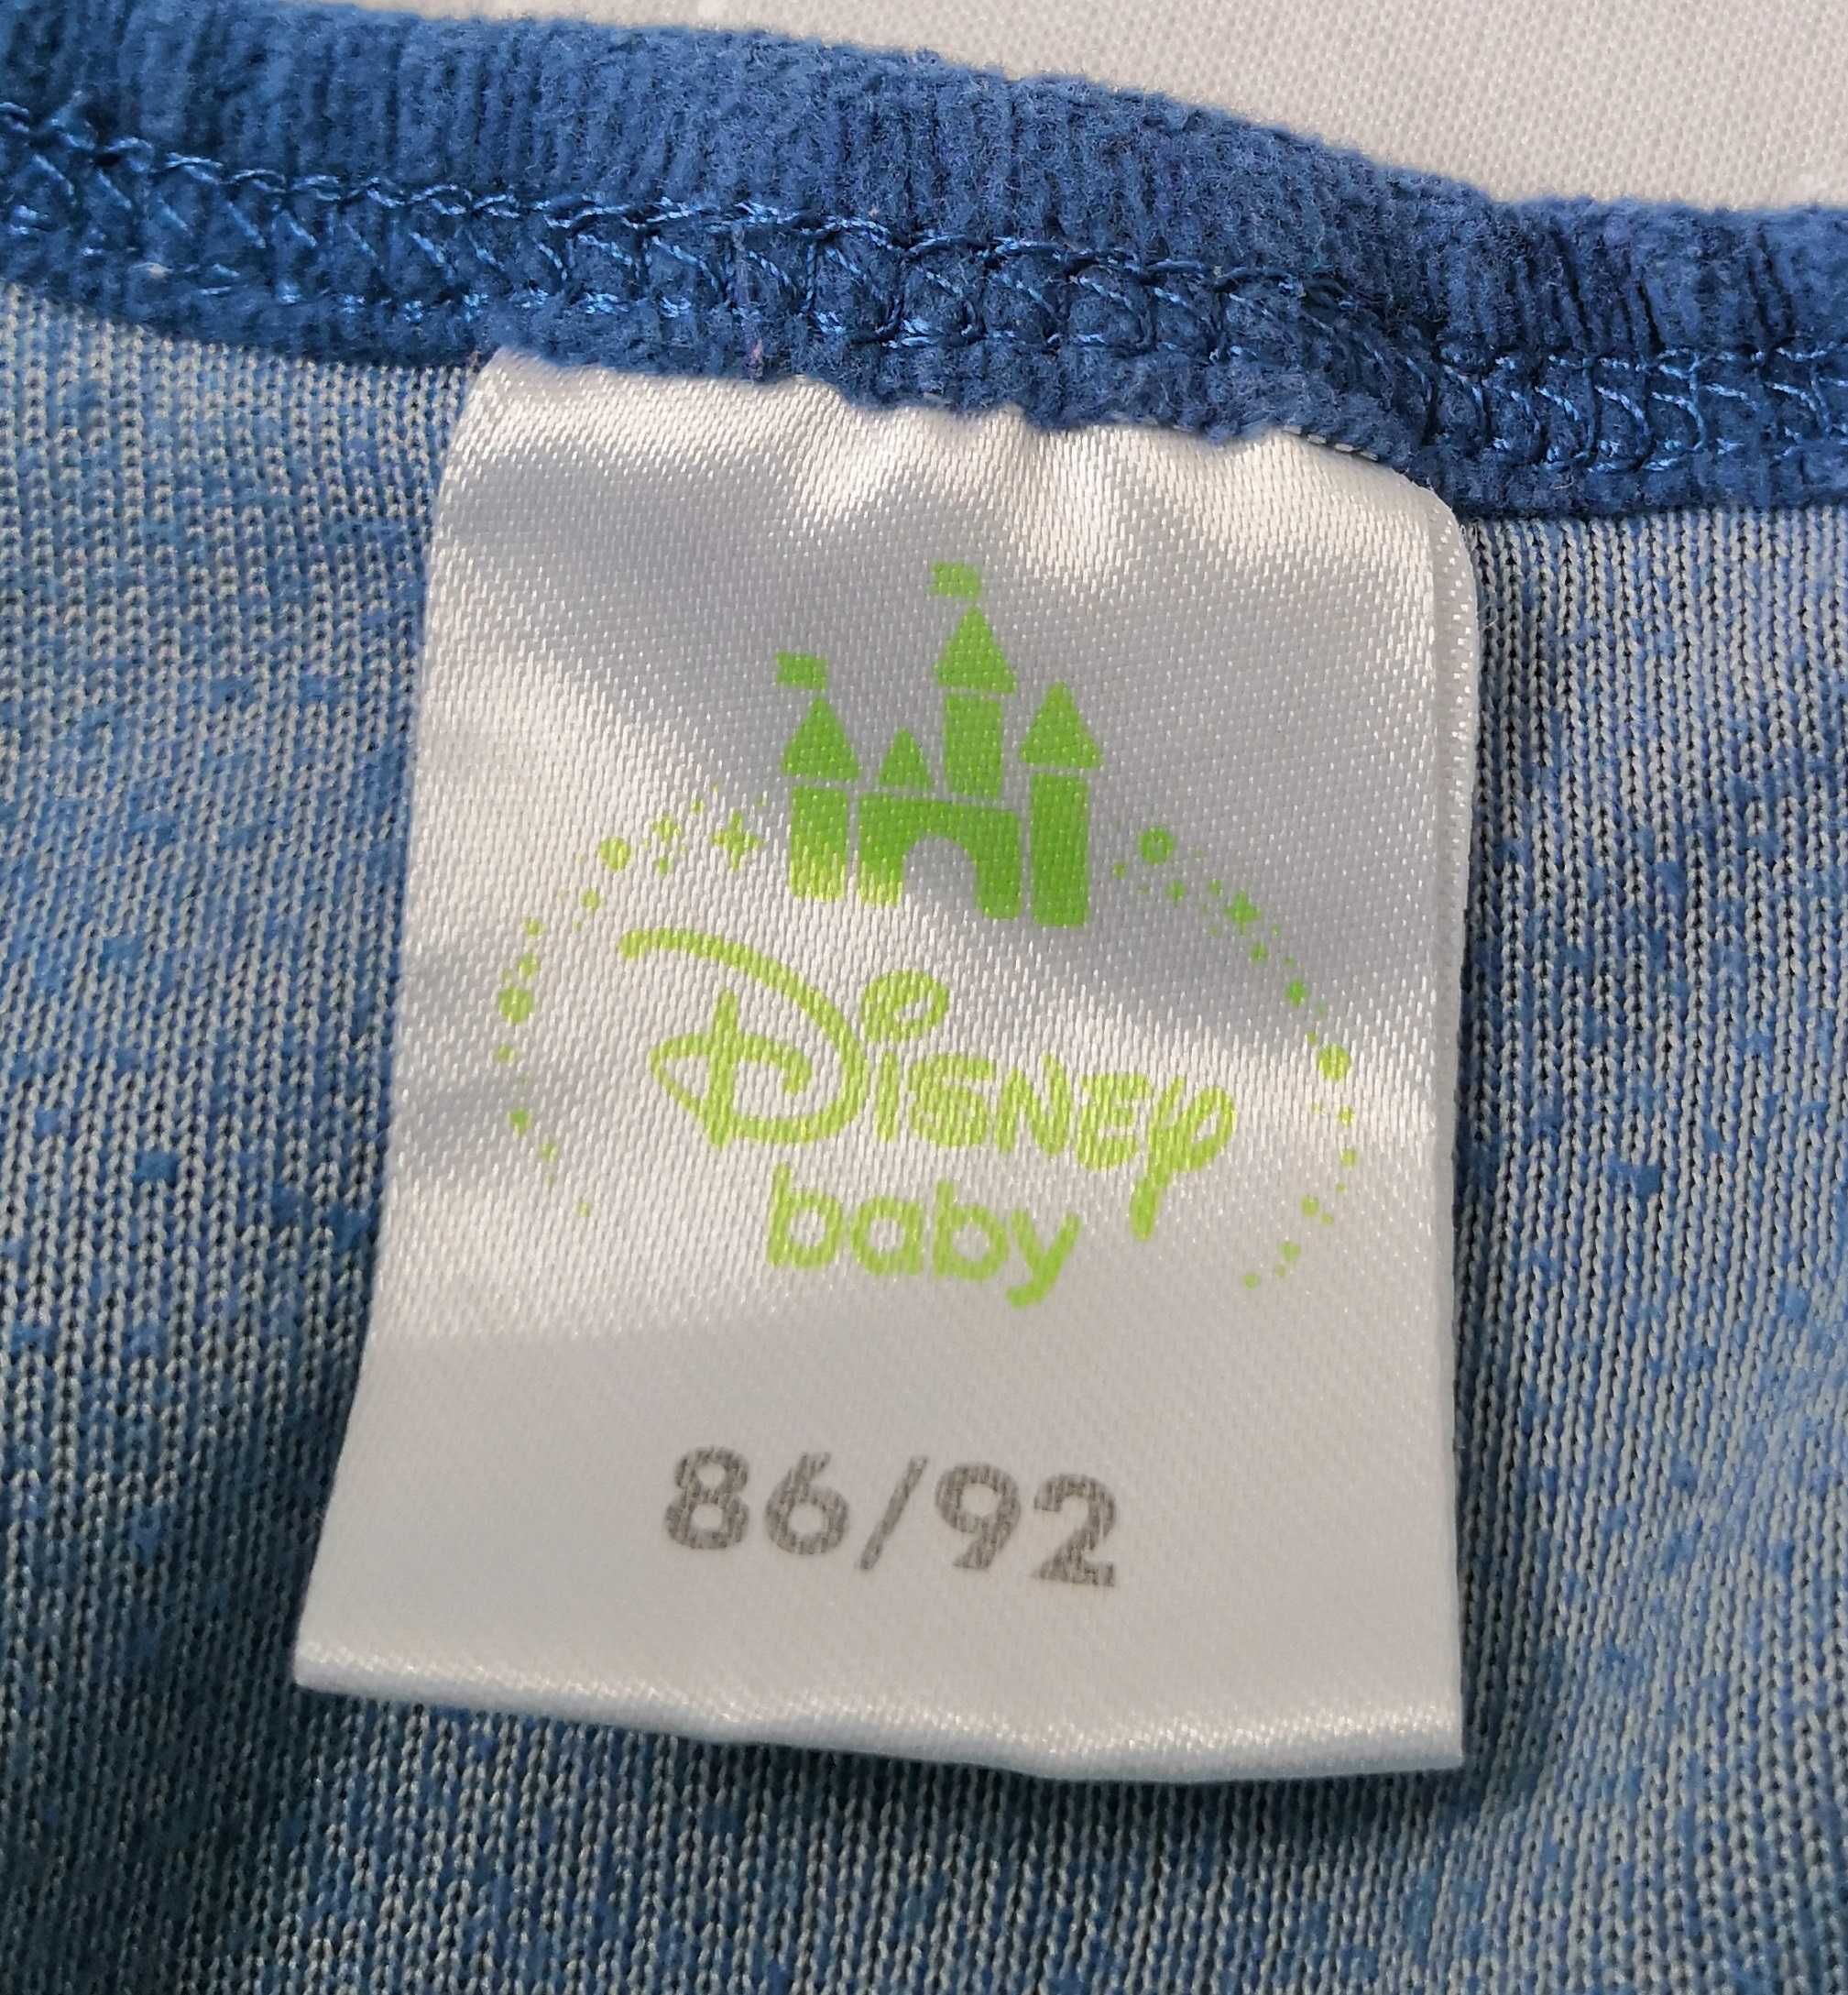 Granatowe śpioszki r 86/92 marki Disney